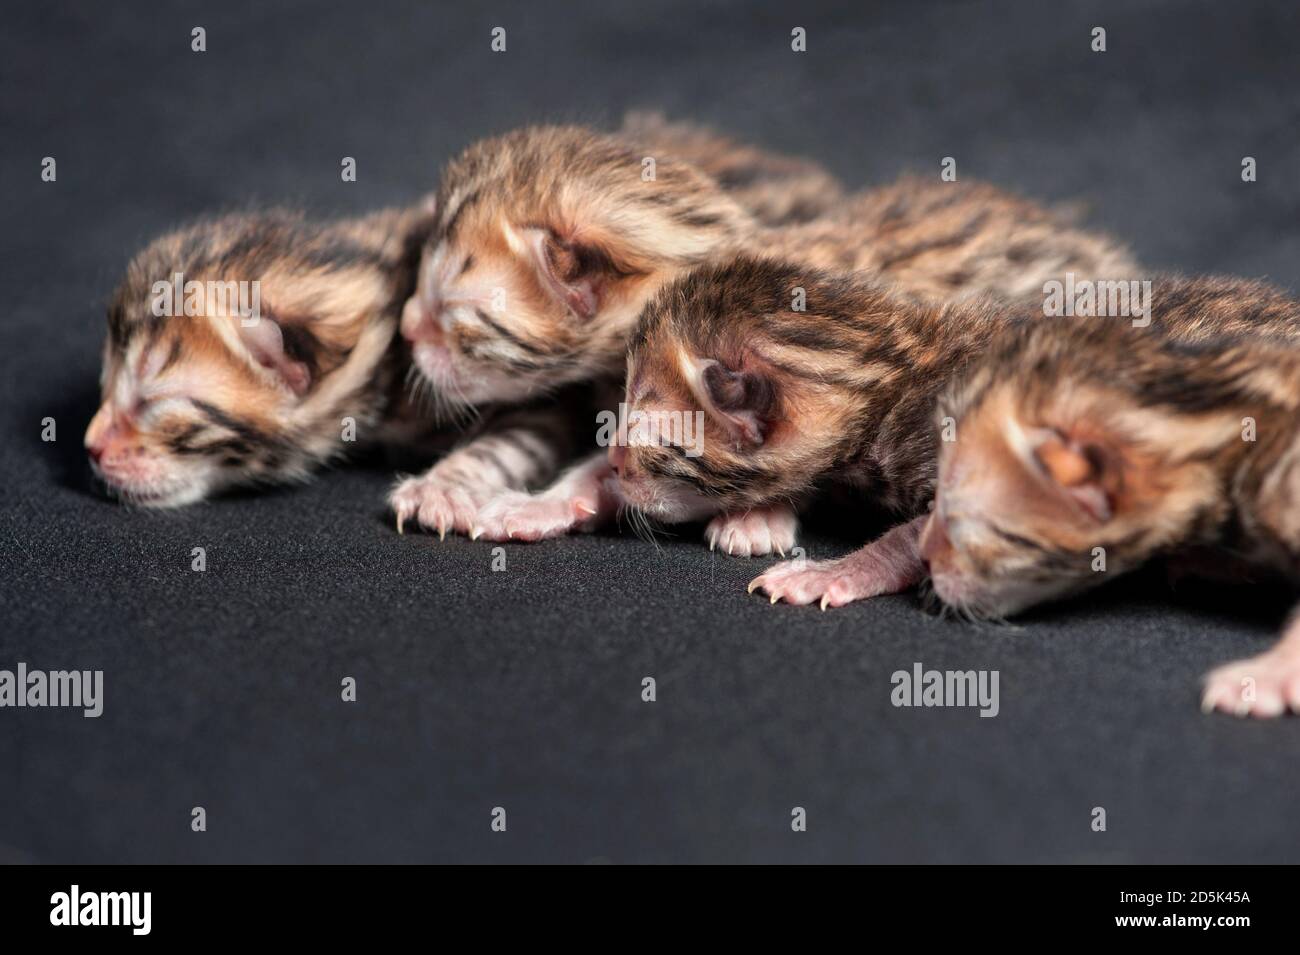 Newborn litter of bengal kittens. Stock Photo